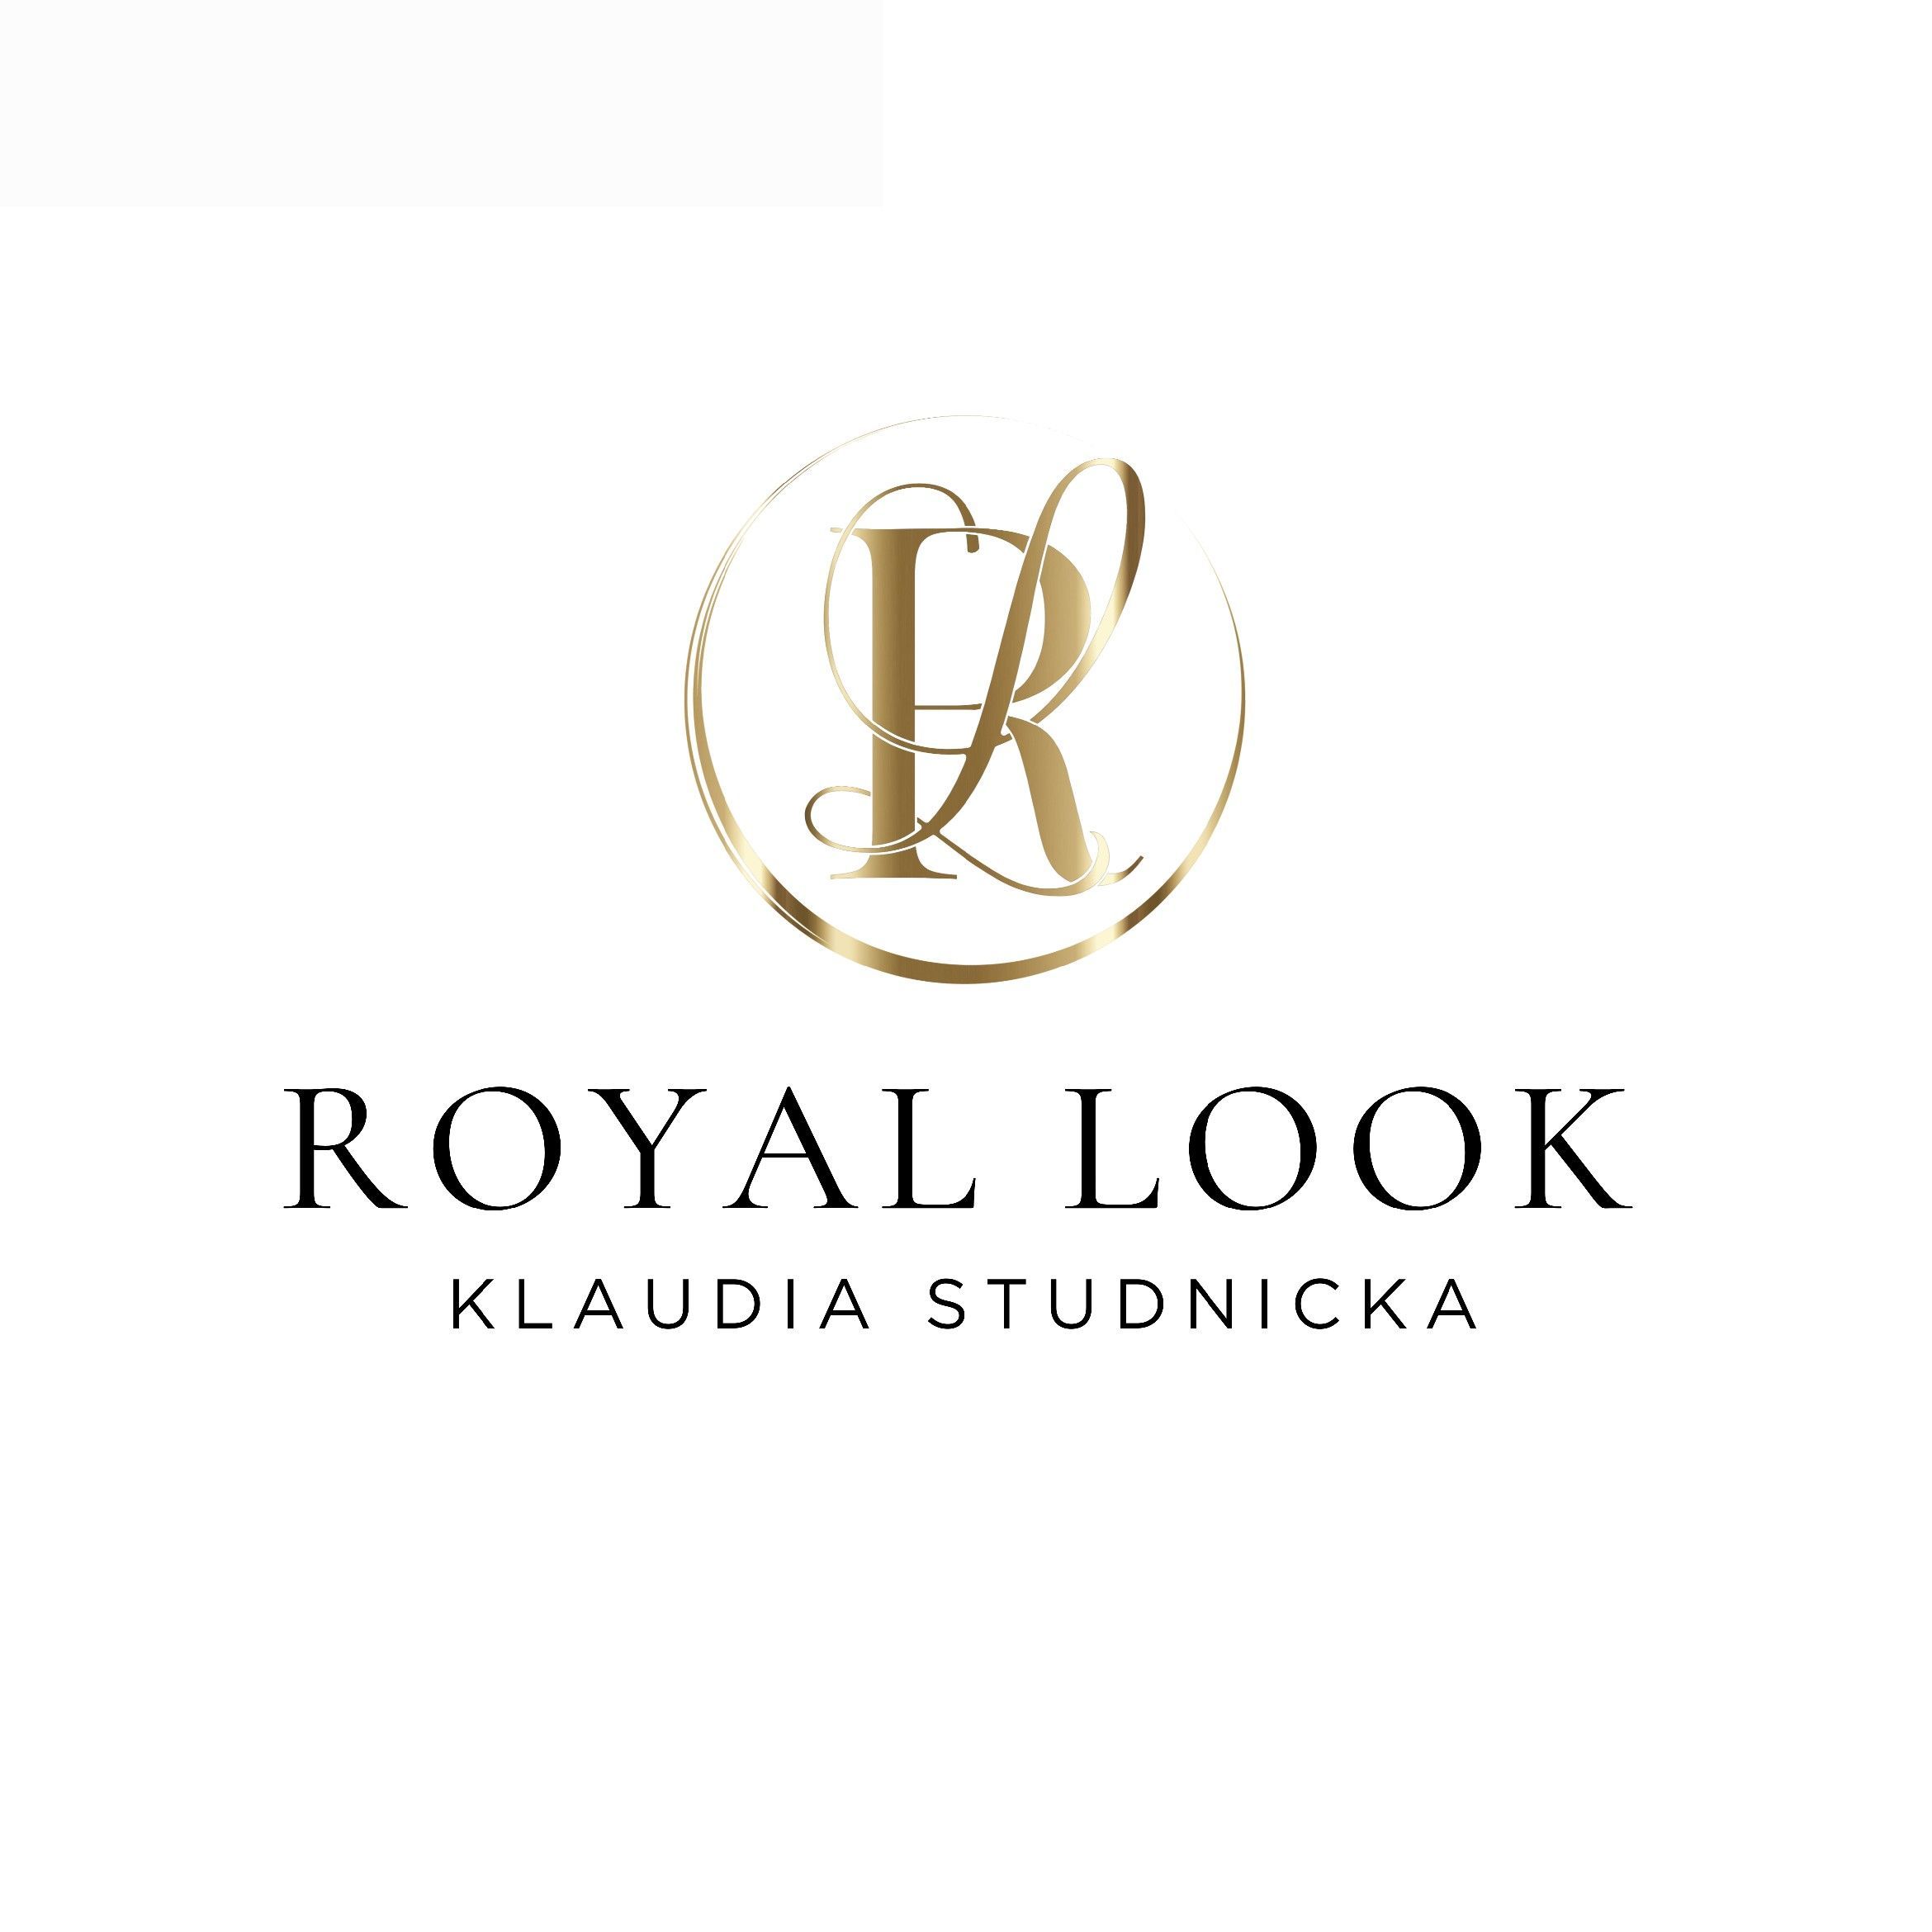 Royal Look Klaudia Studnicka, Grudziądzka 11, 86-200, Chełmno